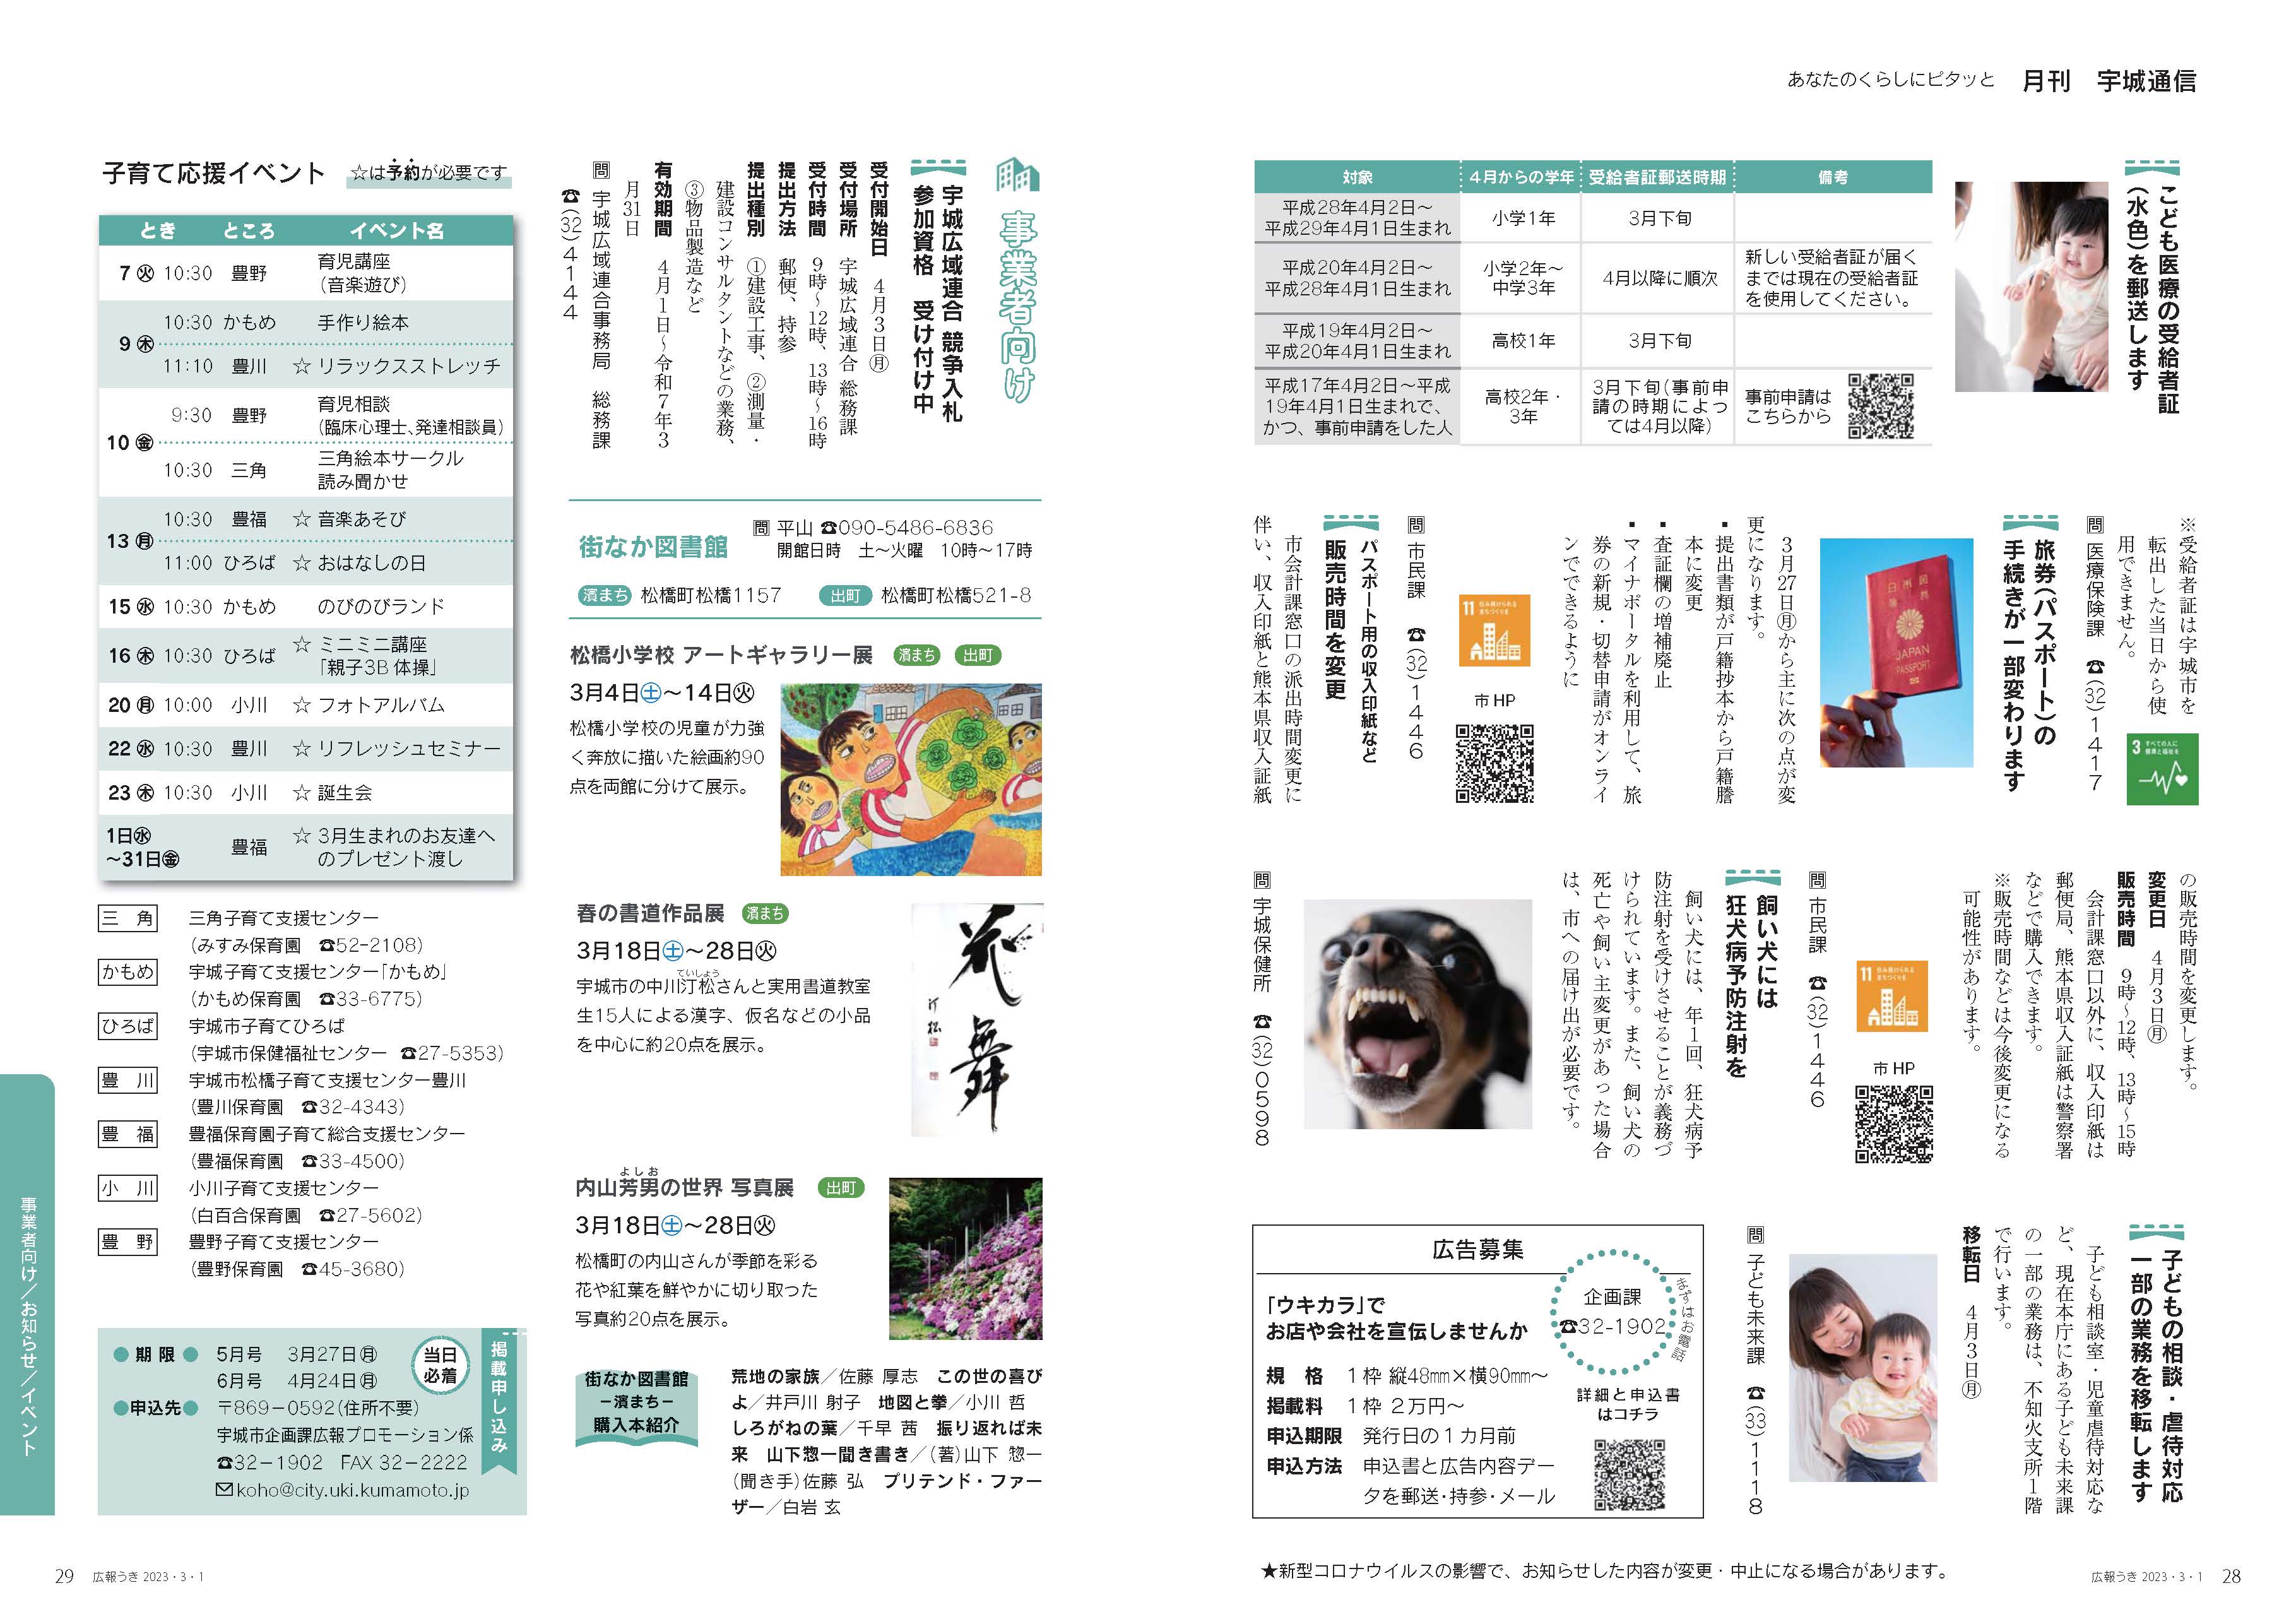 P28、P29 月刊 宇城通信のページ画像、詳細はPDFリンクを参照ください。 